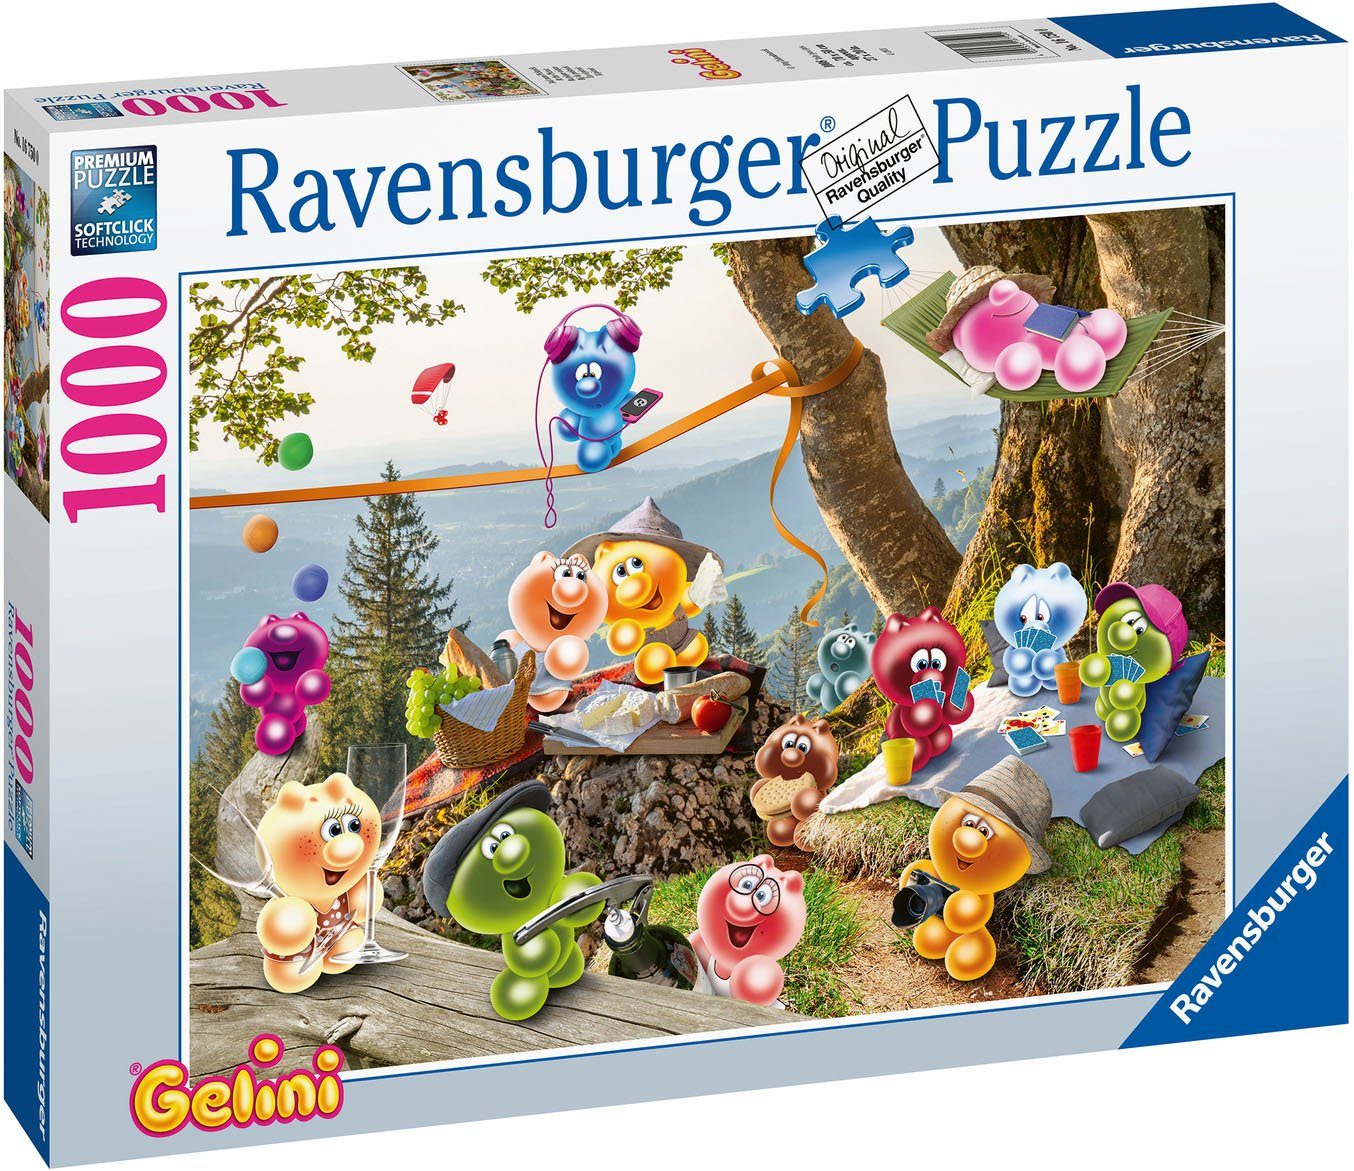 Ravensburger Puzzle Auf zum Germany Picknick, weltweit; FSC® Made schützt - Wald Puzzleteile, - in 1000